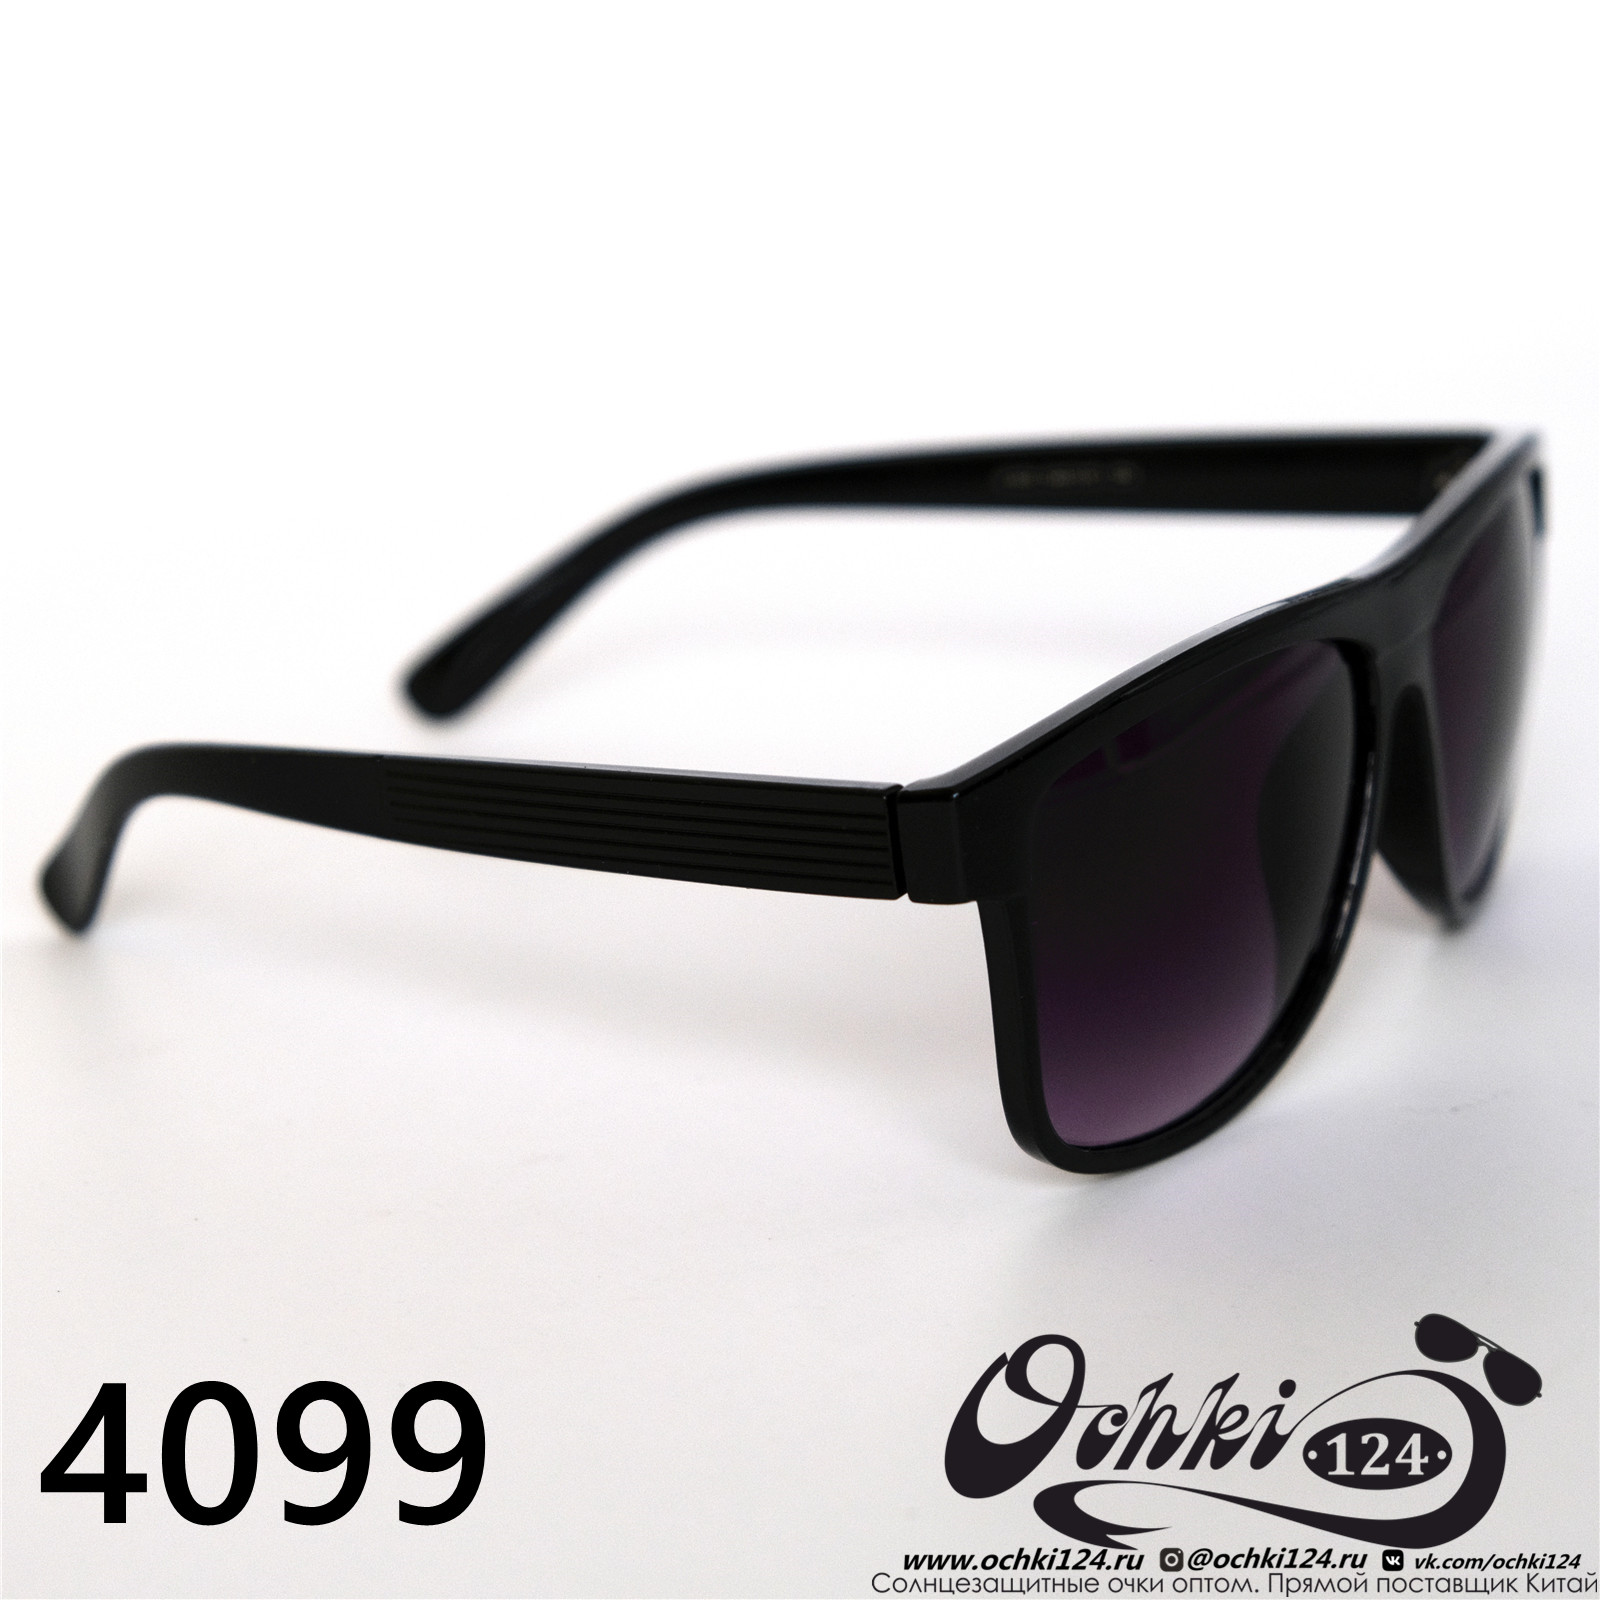  Солнцезащитные очки картинка 2022 Мужские Стандартные Materice 4099-2 